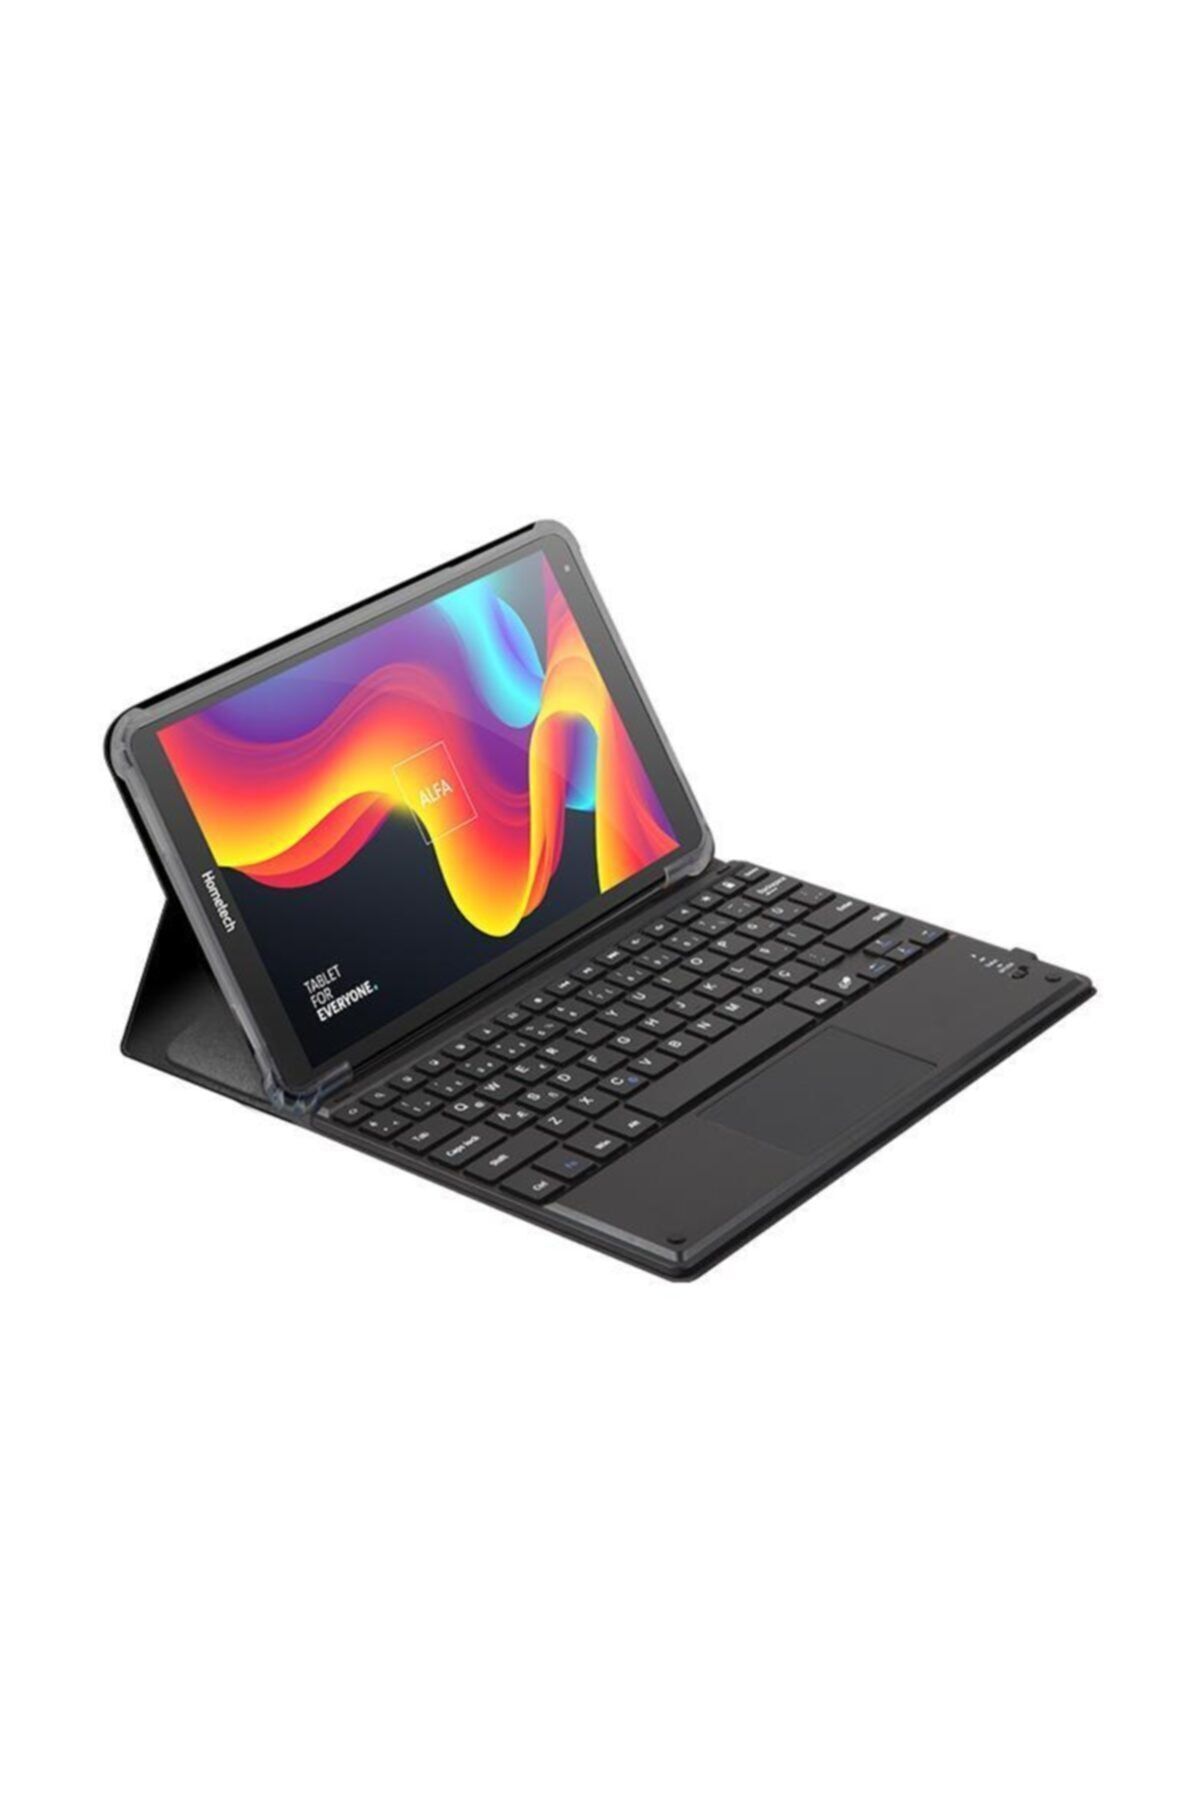 Hometech Alfa 10tx Mtk 8168 2.0ghz Işlemci 4gb Ram 64gb Hafıza 10.1 Ips Android Klavyeli Tablet